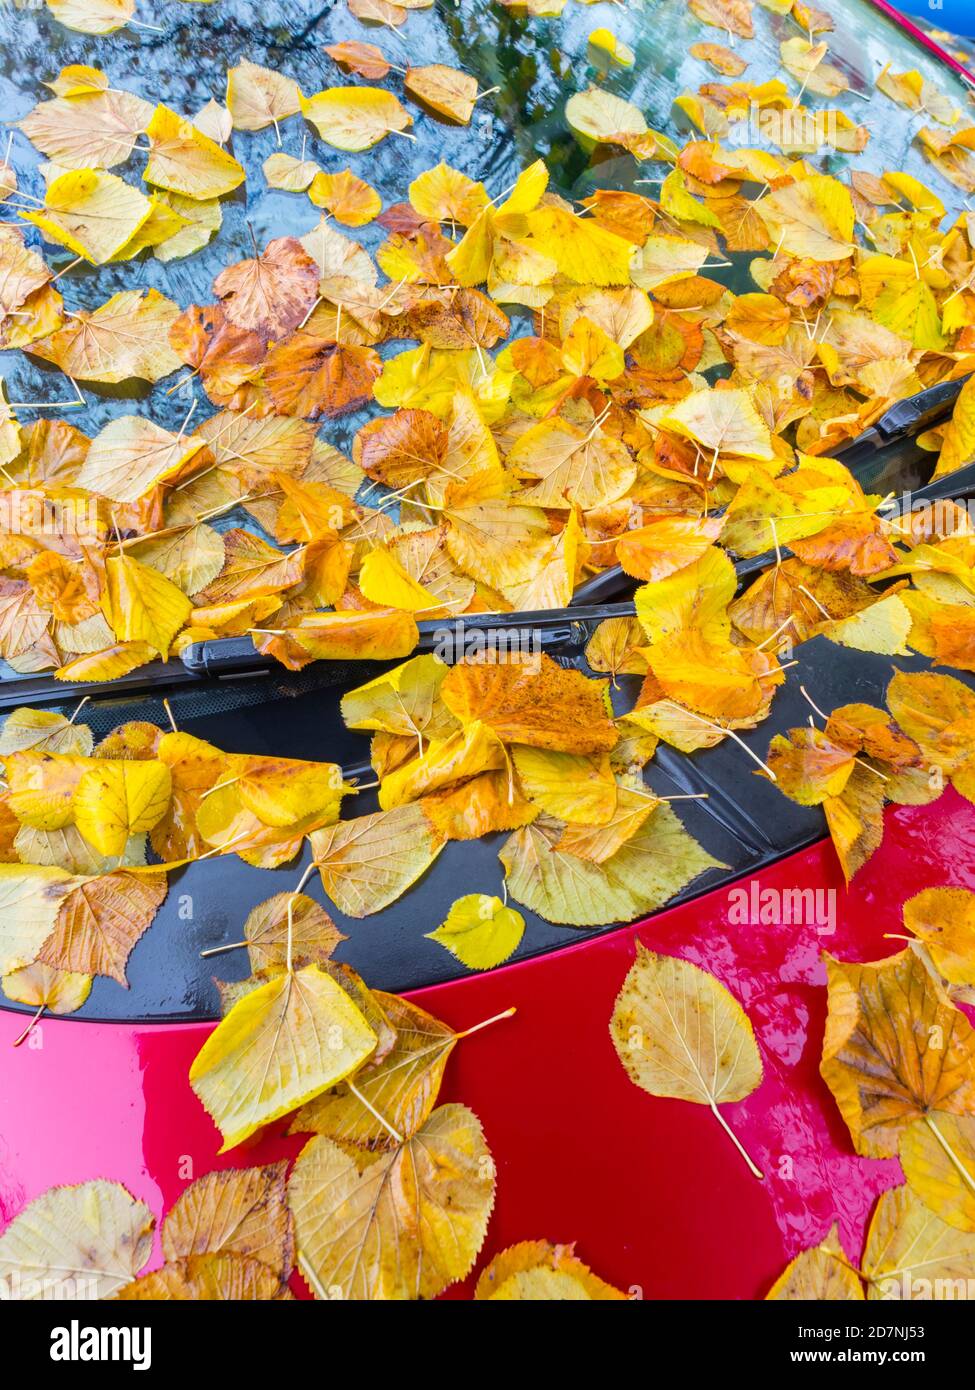 Hojas caídas en la cima Red vehículo estacionado Autumnal Otoño Temporada de otoño Foto de stock